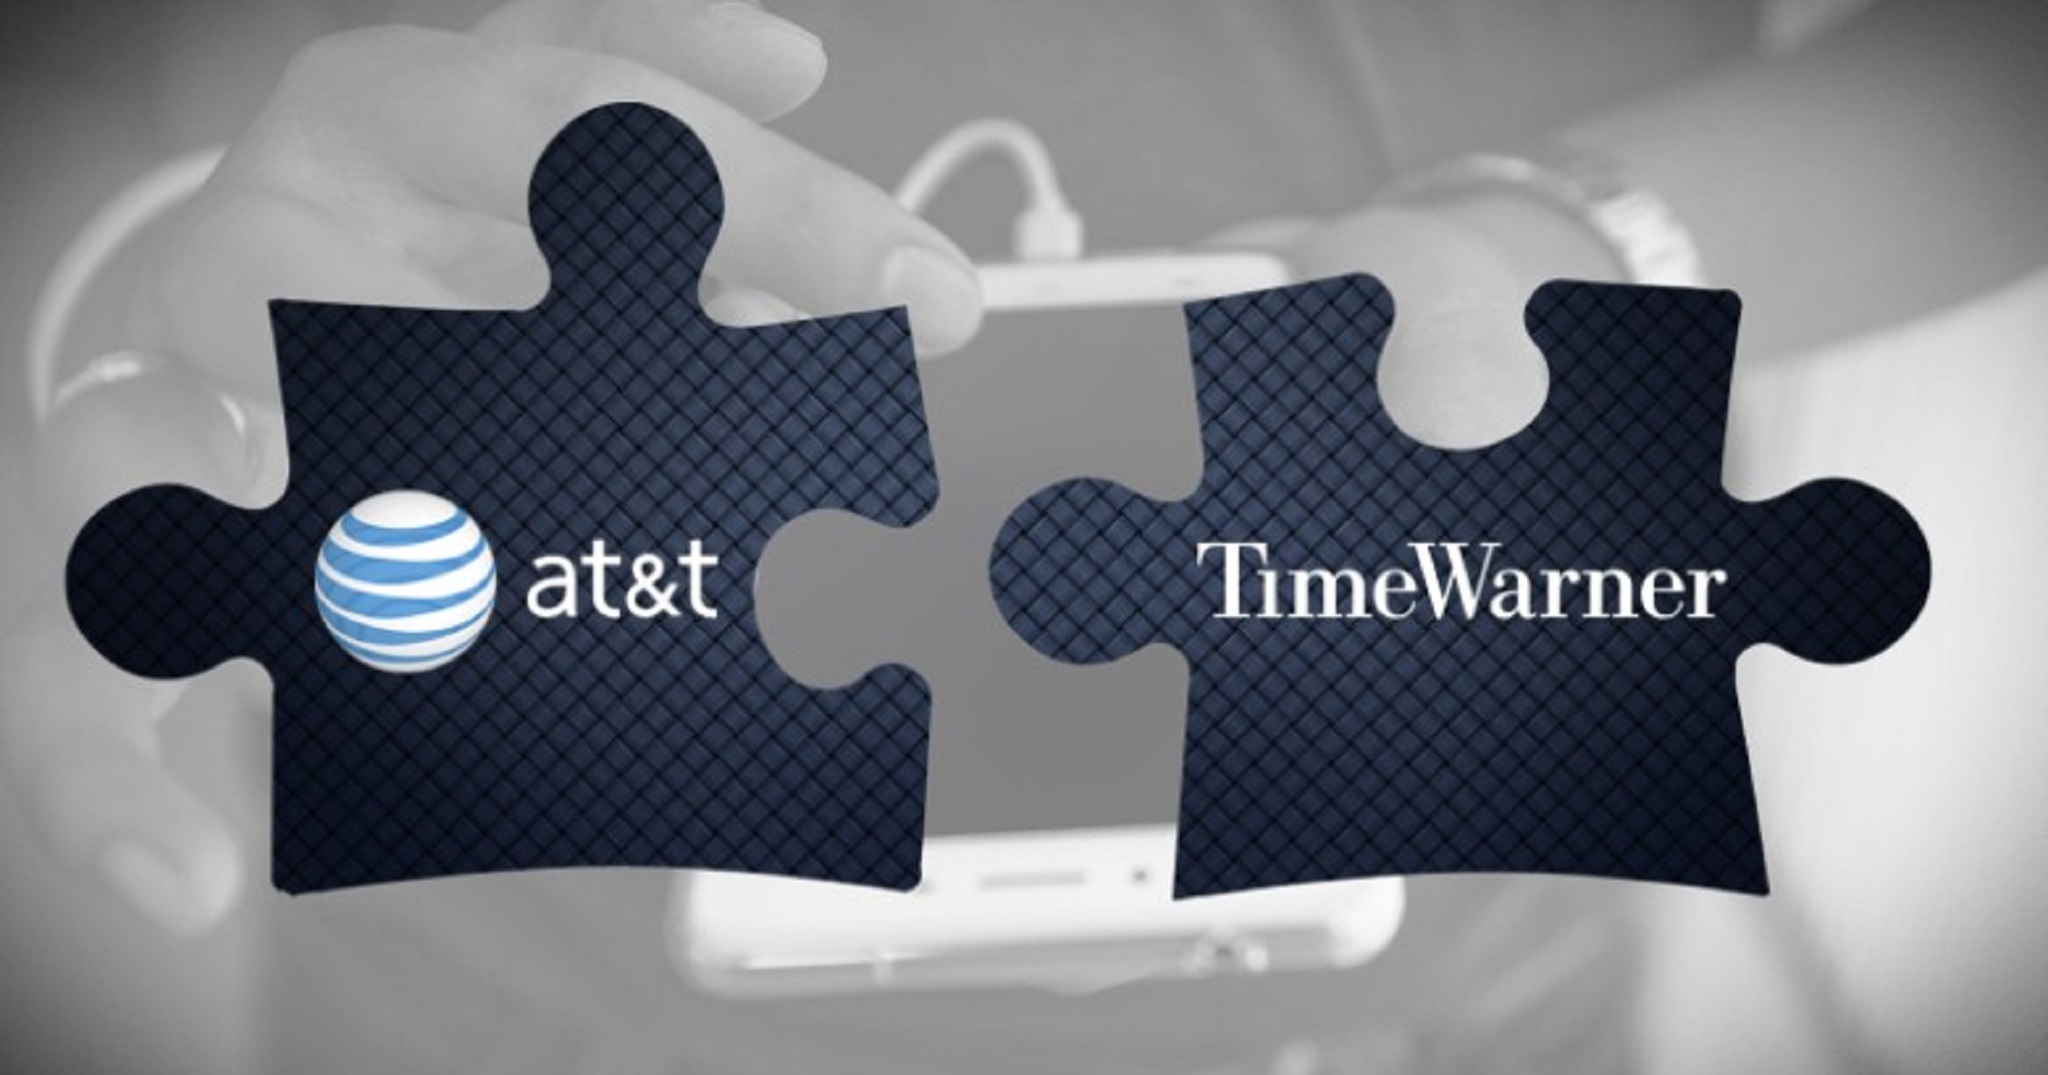 Tòa án tối cao Mỹ xử AT&T thắng kiện việc muốn mua lại Time Warner giá 85 tỉ đô